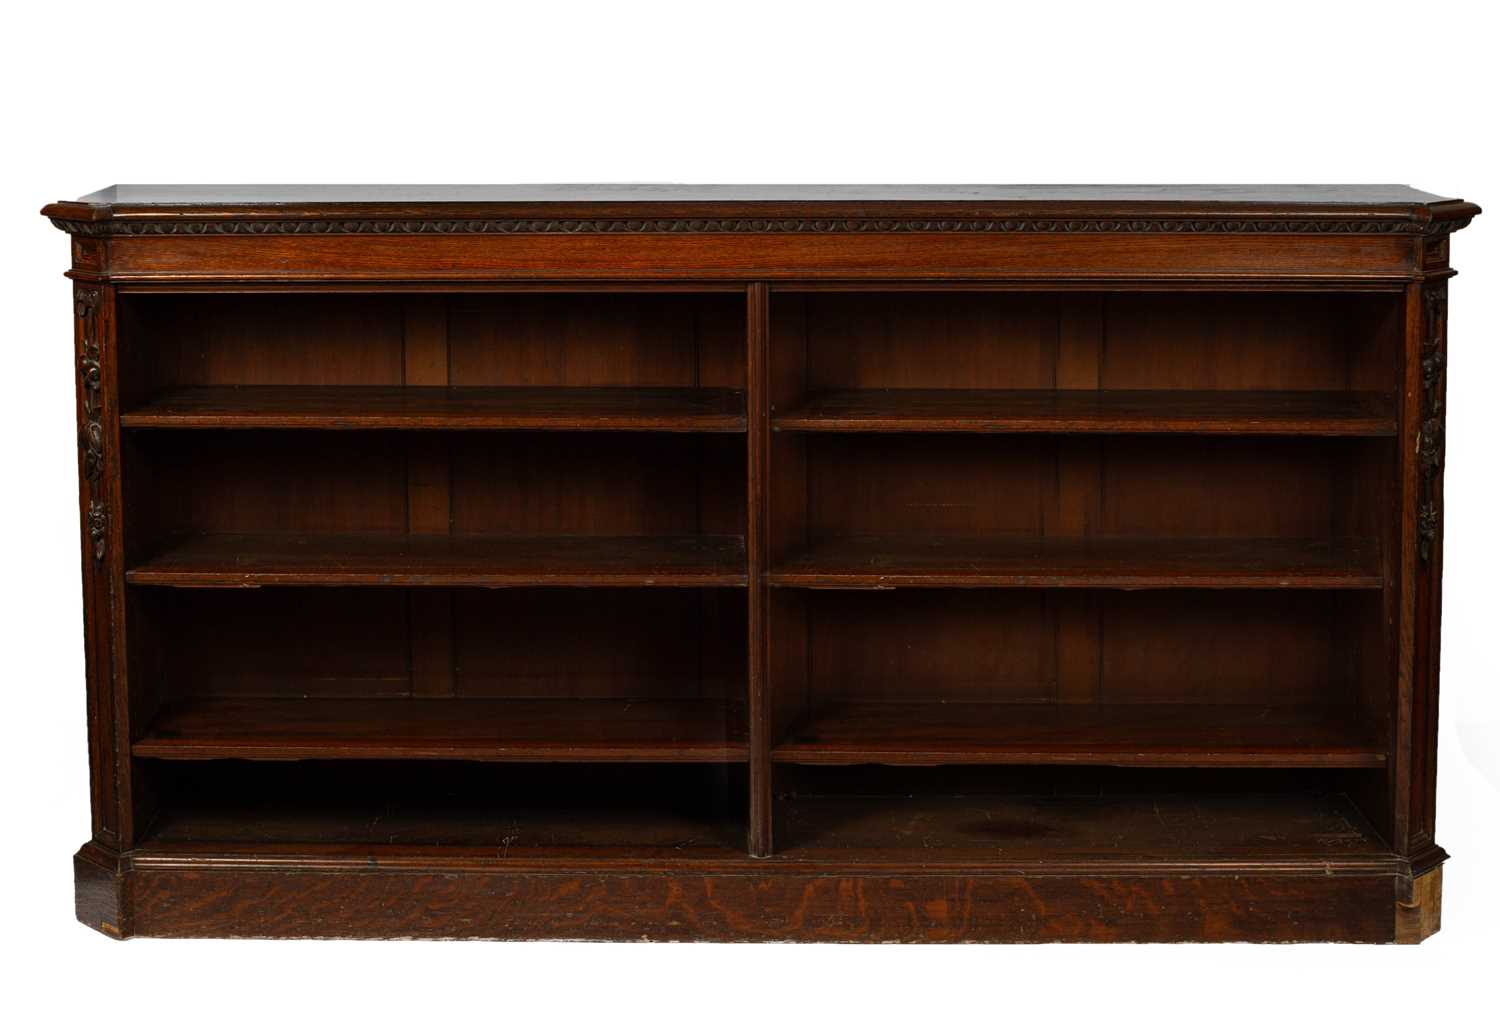 A Victorian oak dwarf bookcase